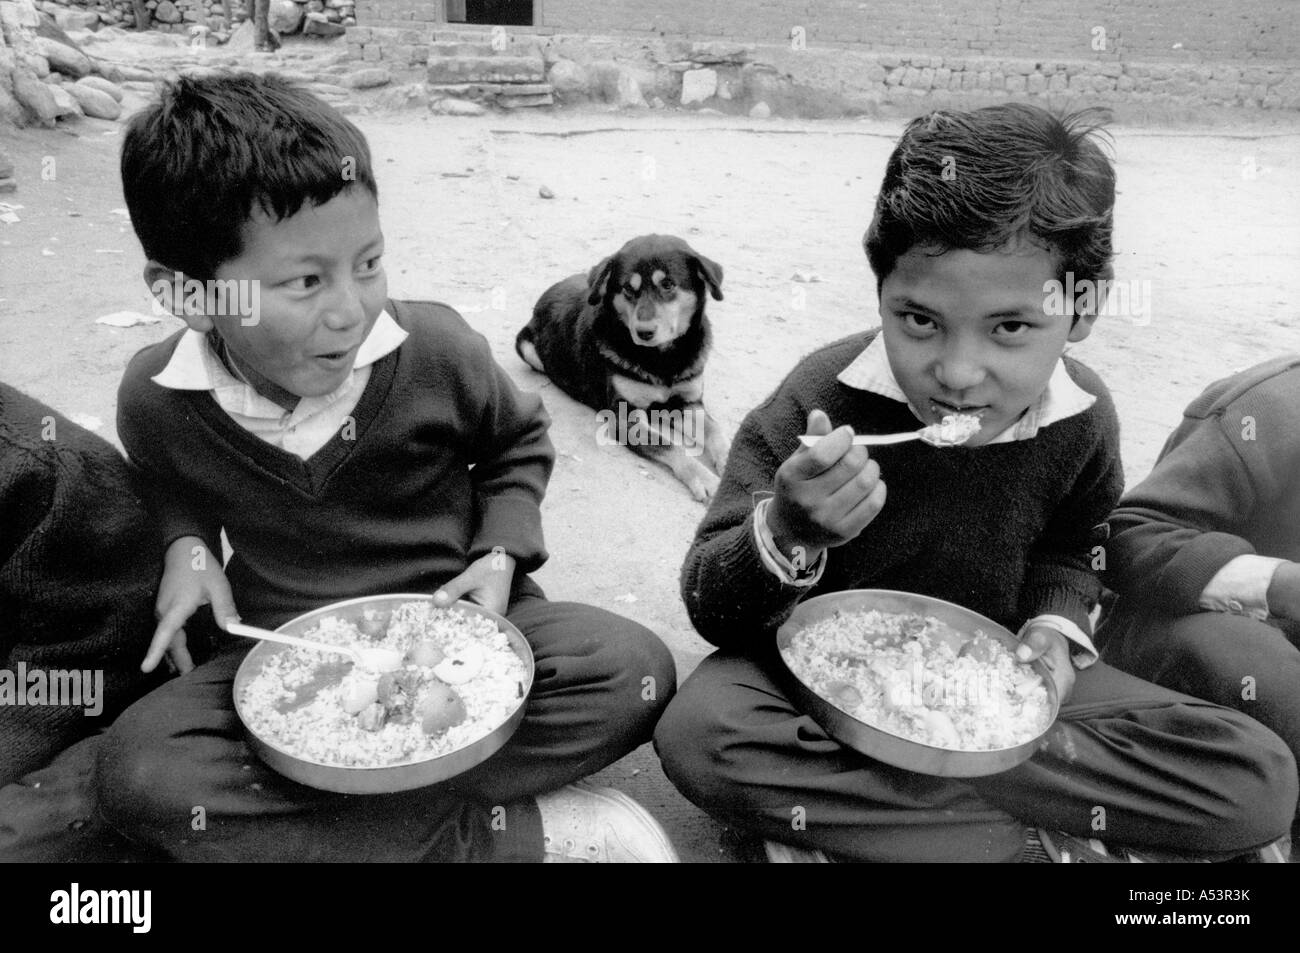 Painet ha1763 353 in bianco e nero di cibo per i rifugiati tibetani ragazzi di mangiare il pranzo himachel pradesh india paese nazione in via di sviluppo Foto Stock